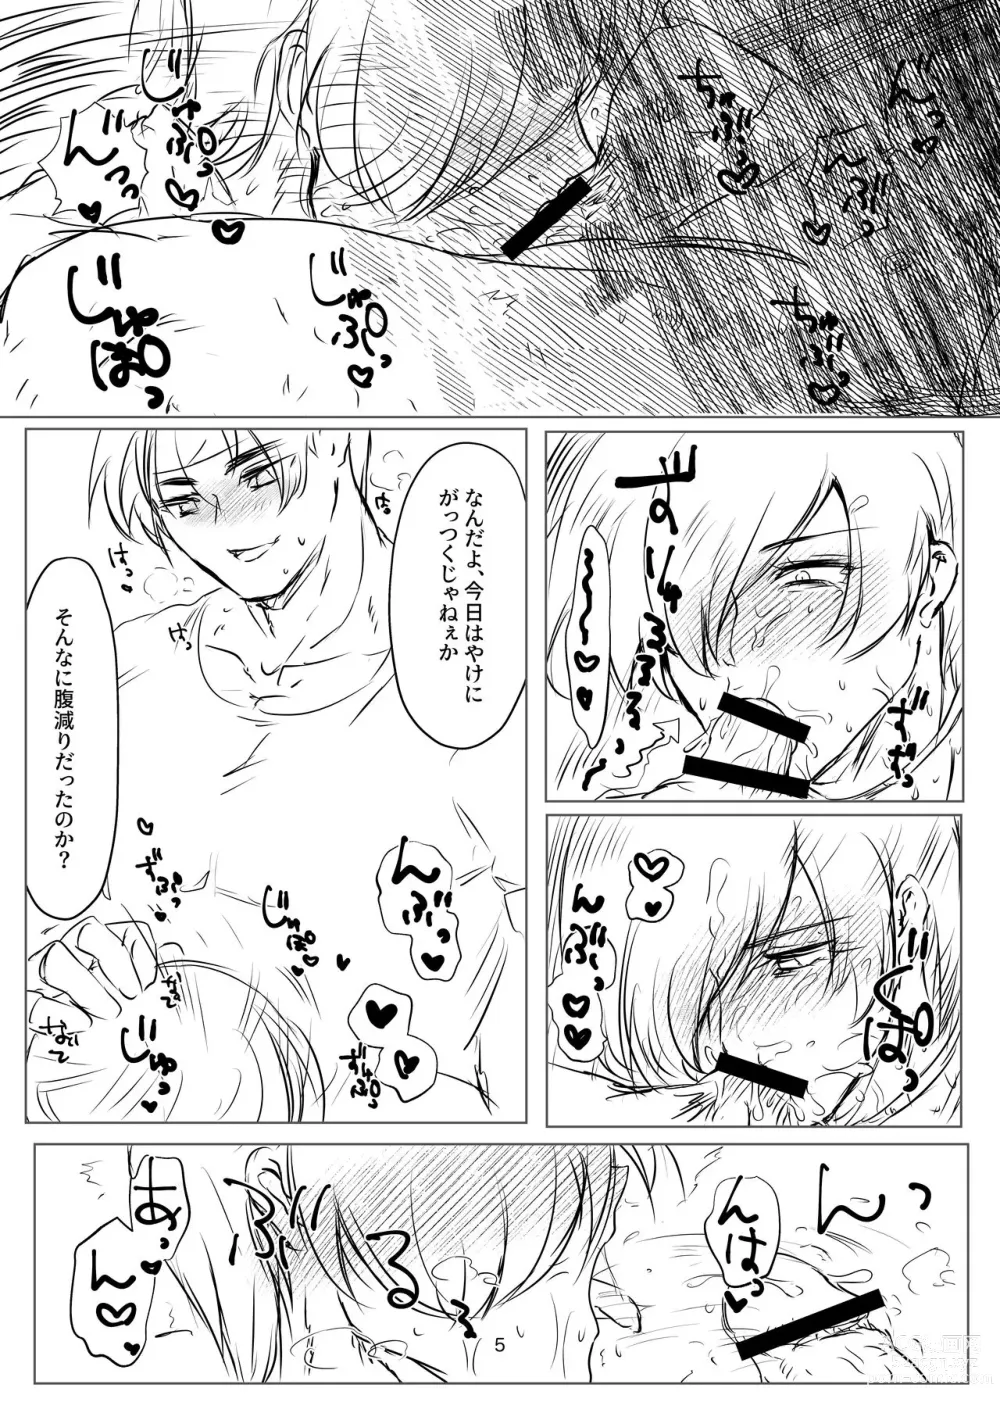 Page 5 of doujinshi R18 Manga EAT ME!